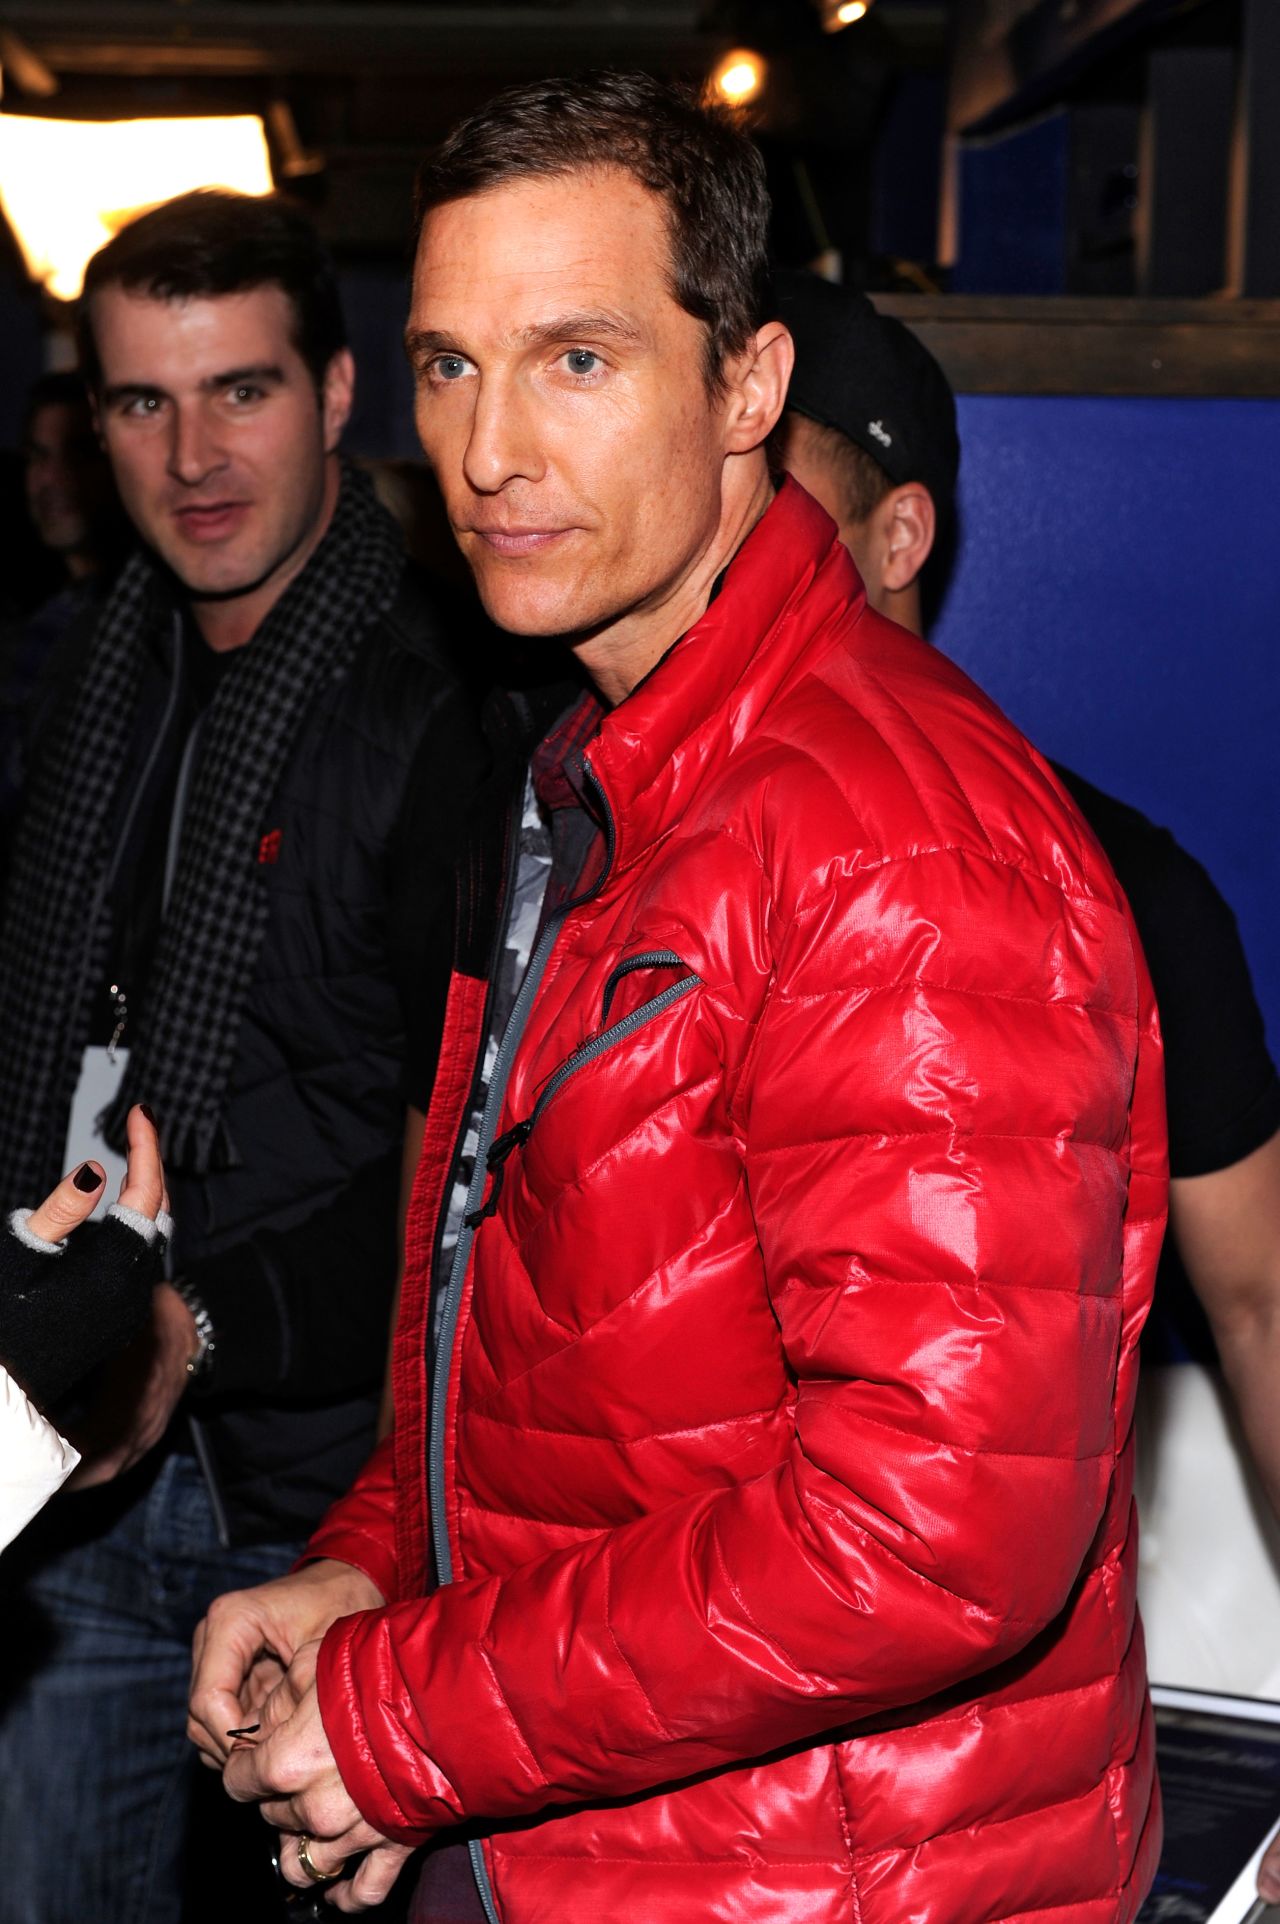 Ganador: A Matthew McConaughey lo elogiaron por su participación en dos películas de 2013, "Mud" y "Dallas Buyers Club". 